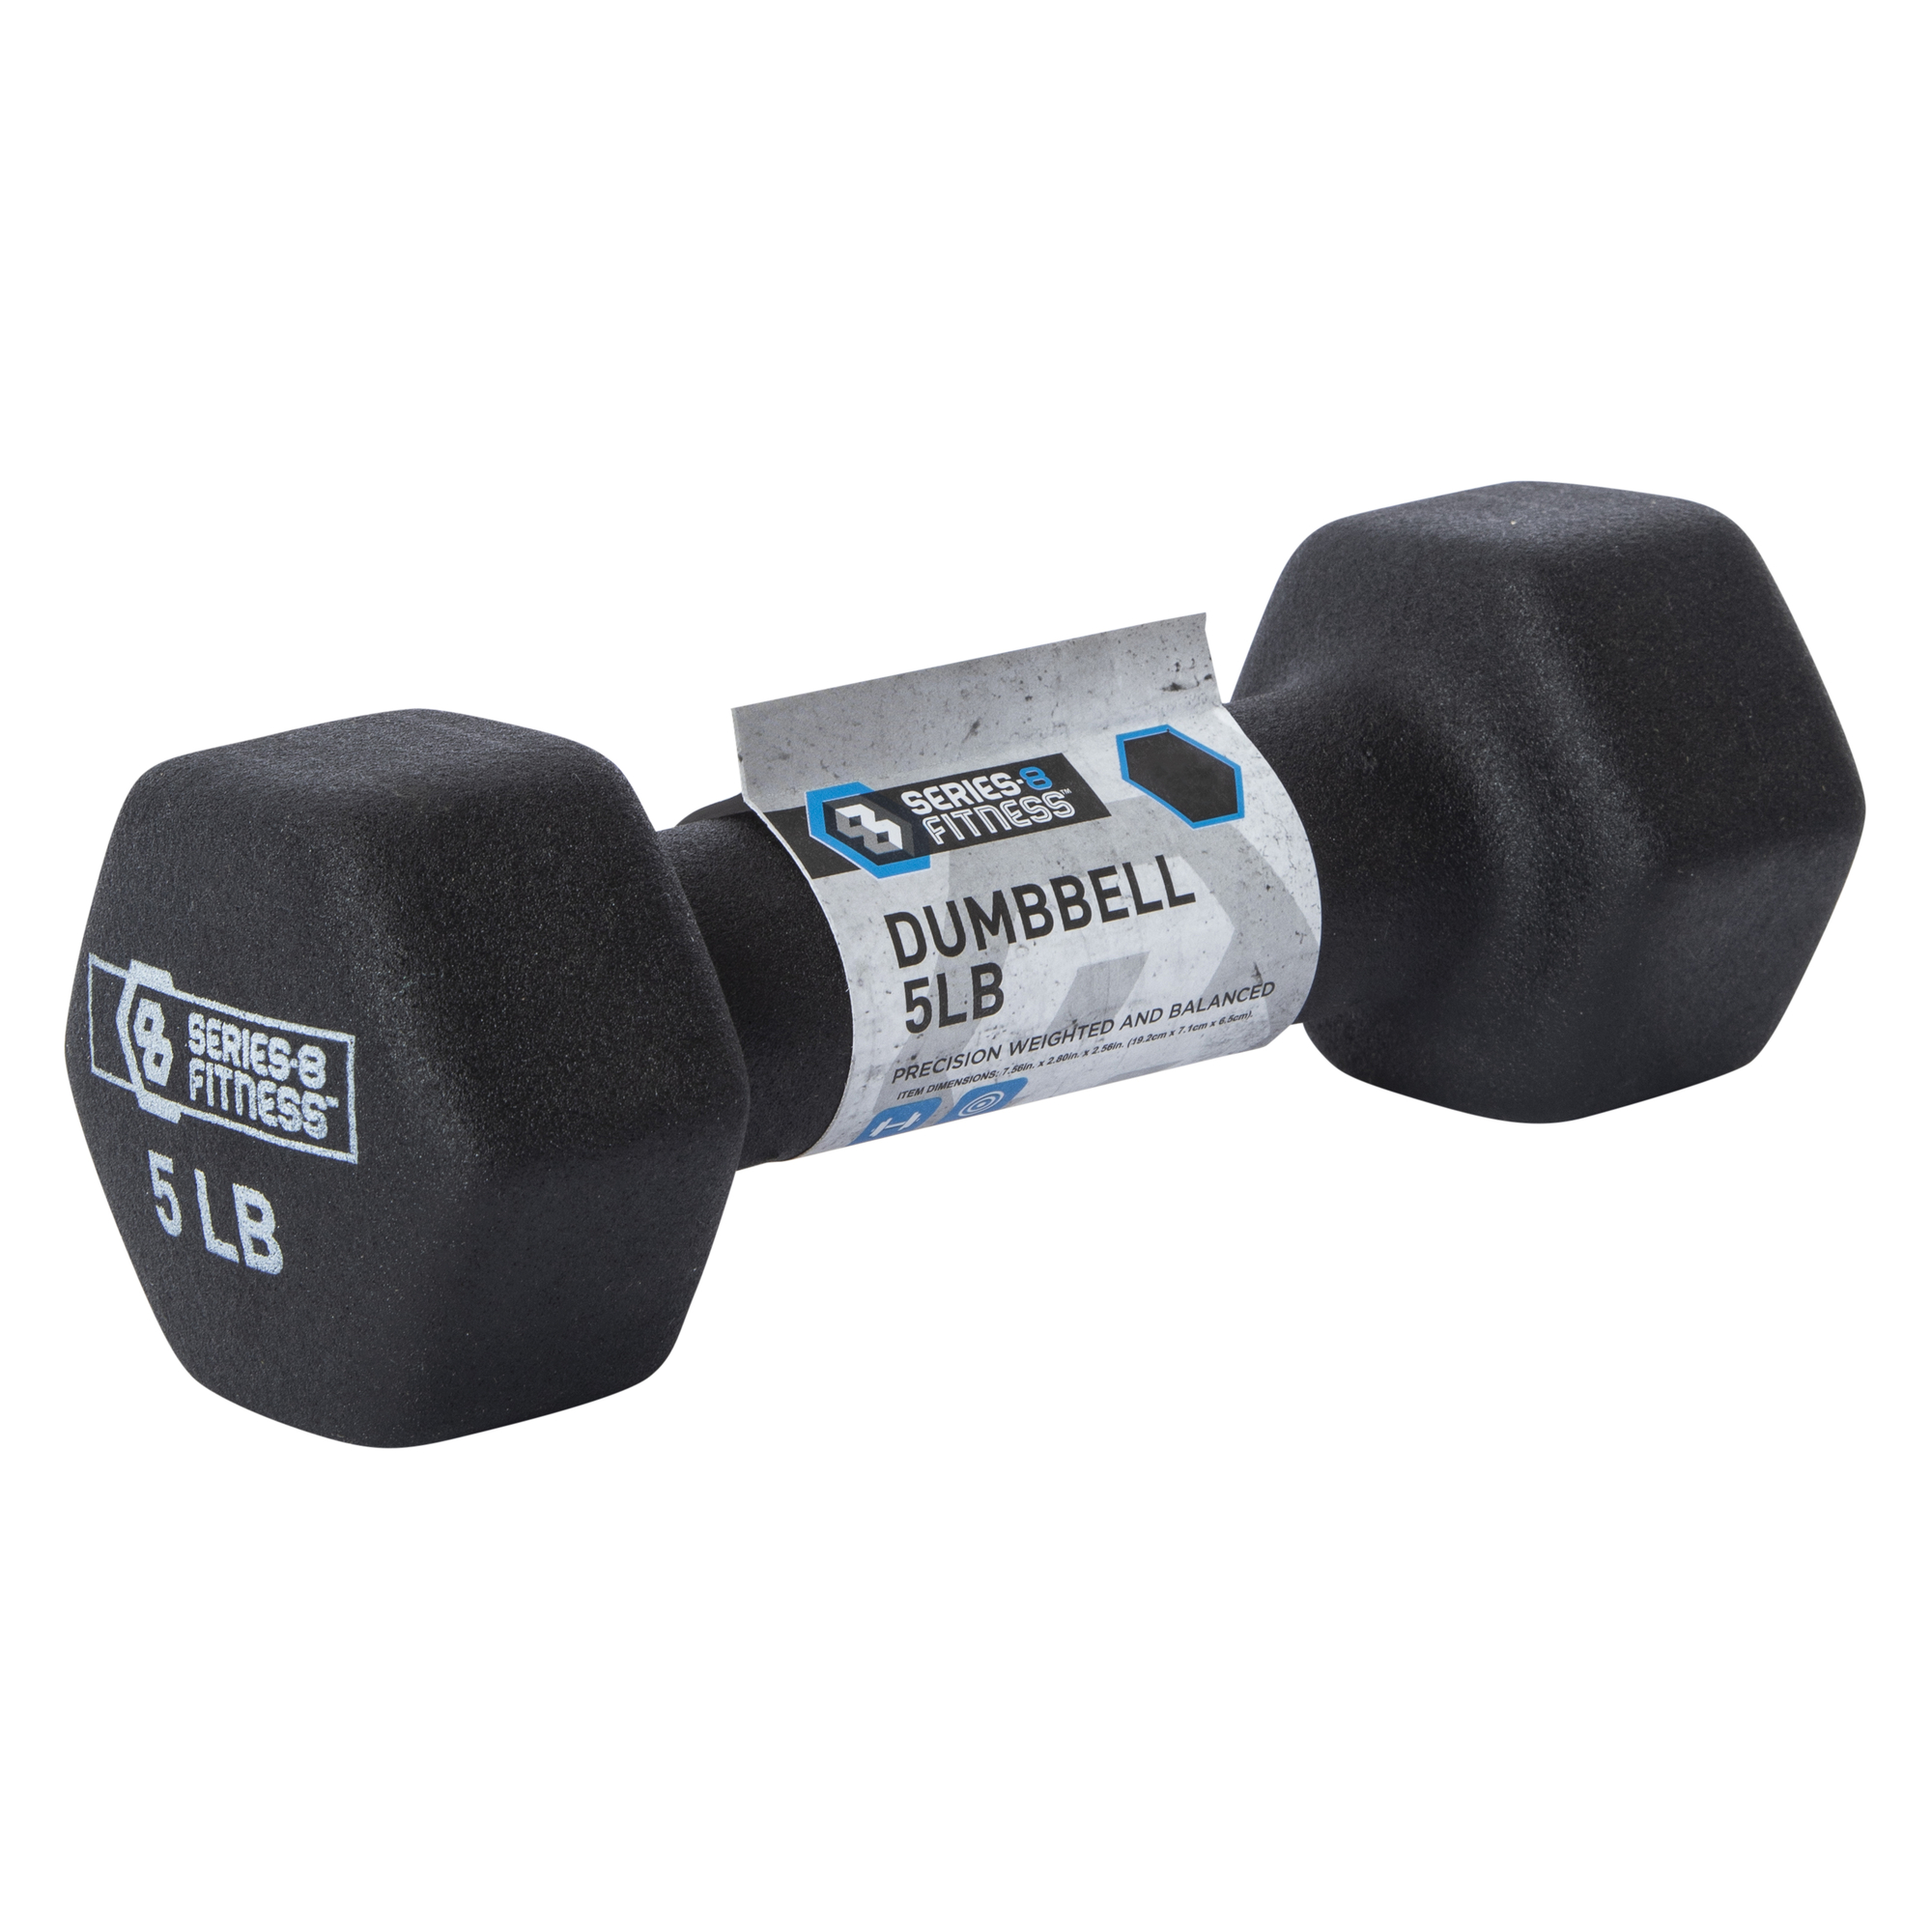 series-8 fitness™ 5lb dumbbell